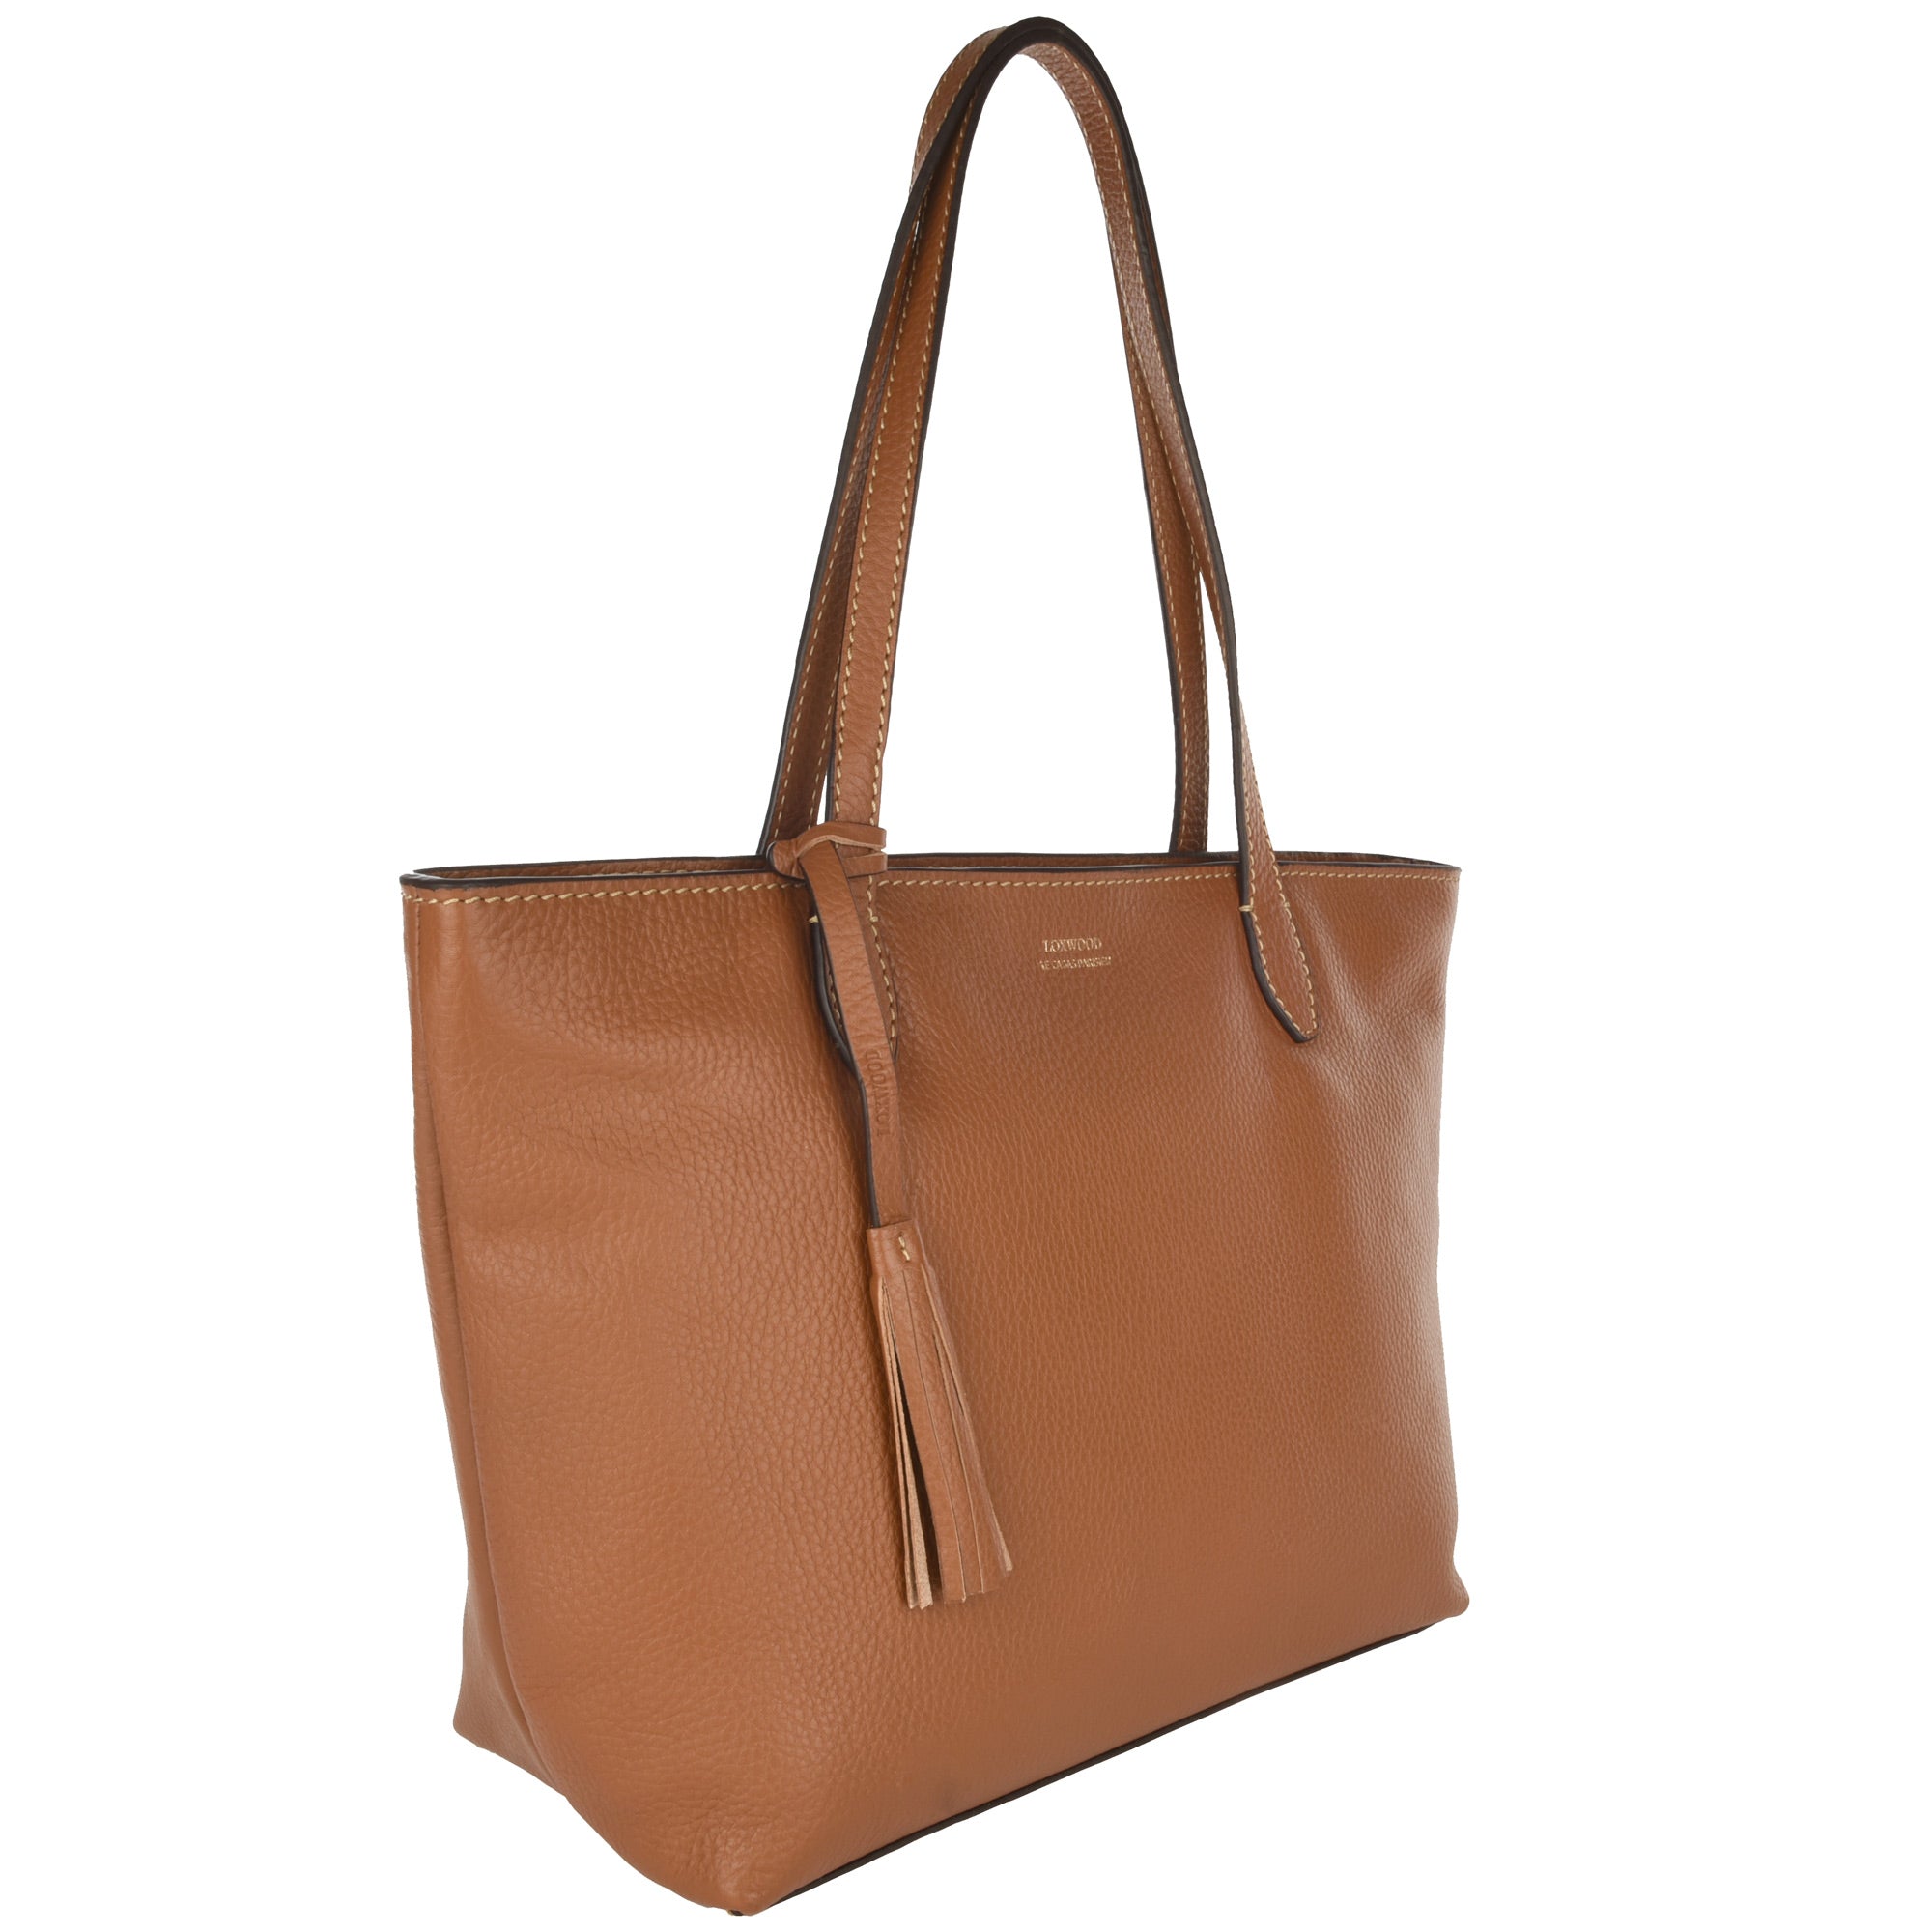 NEW EDEN - Grained leather shoulder handbag